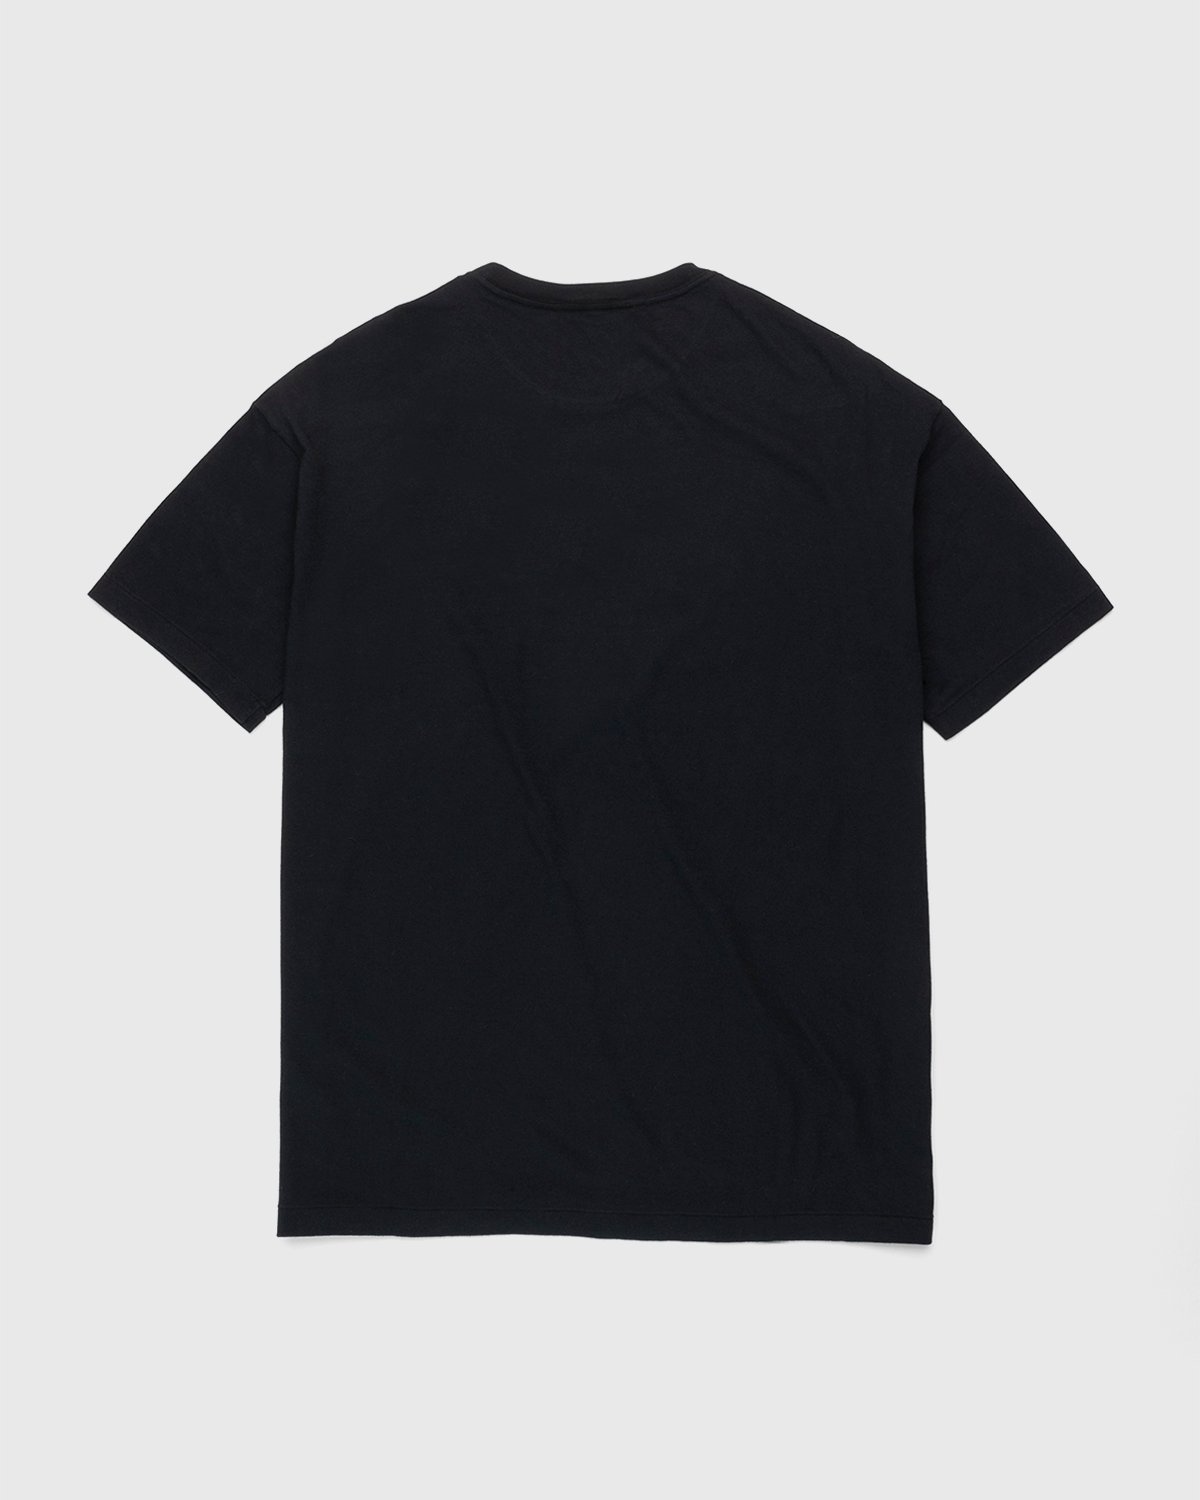 Auralee – Raw Jersey T-Shirt Black | Highsnobiety Shop